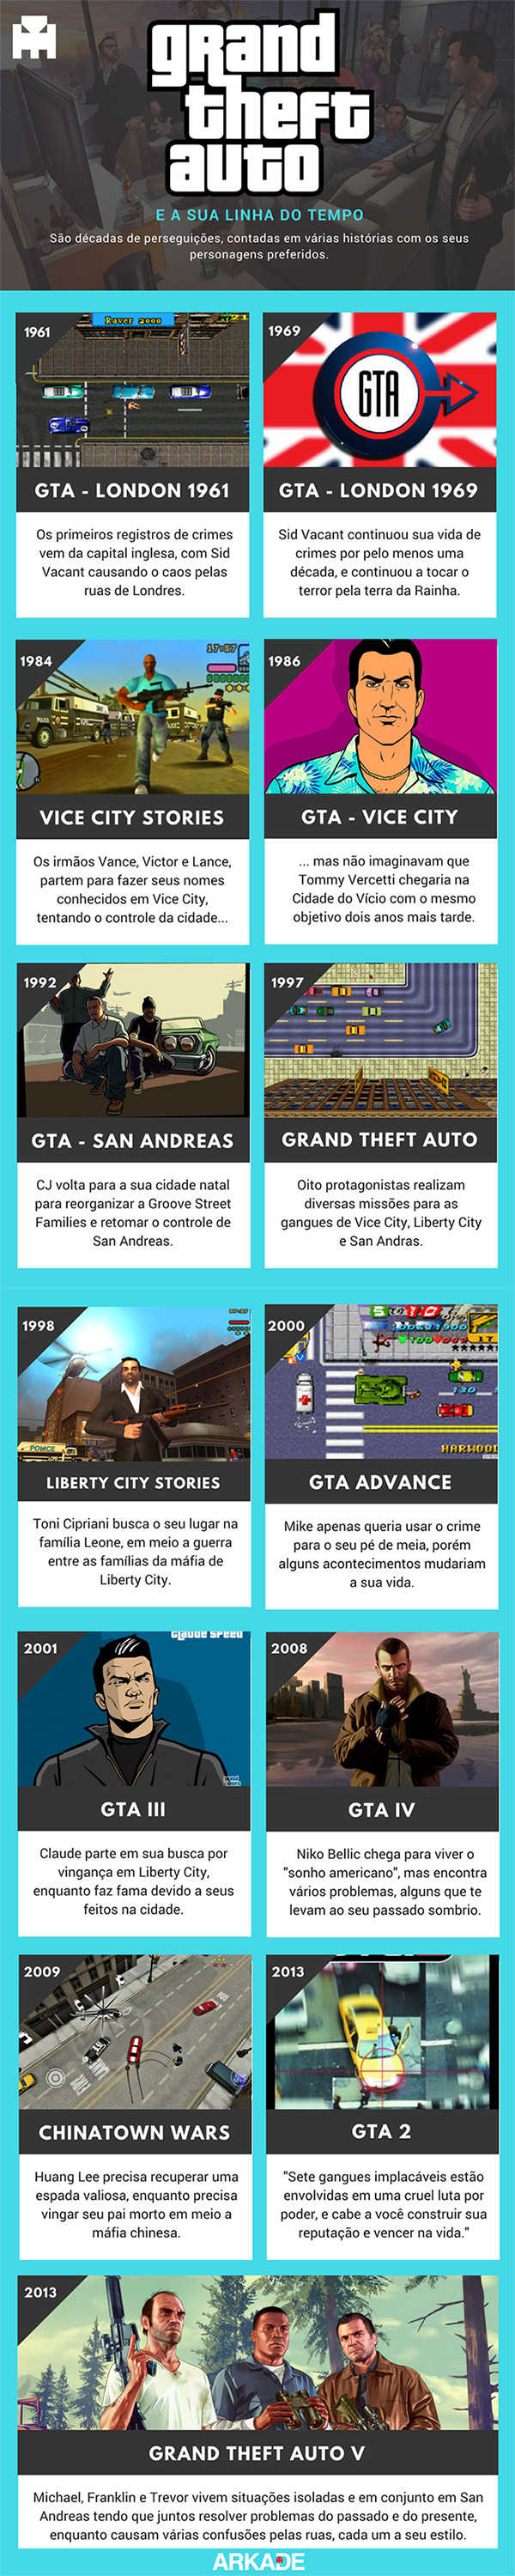 Infográfico - A Linha do Tempo da série Grand Theft Auto